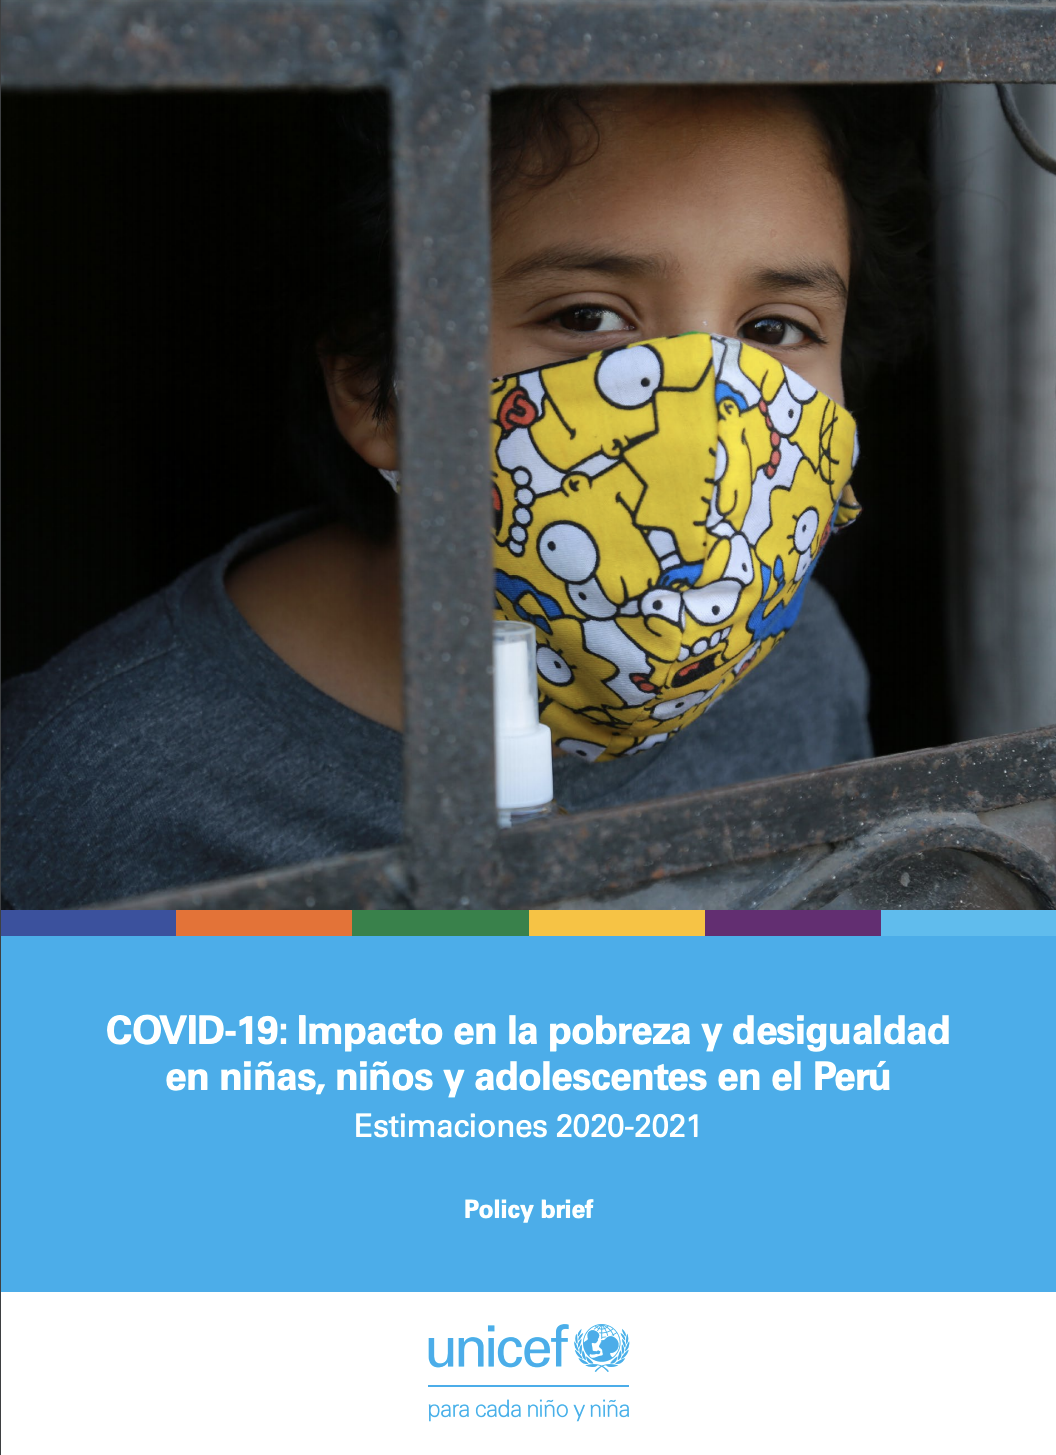 COVID-19: Impacto en la pobreza y desigualdad en niñas, niños y adolescentes en el Perú